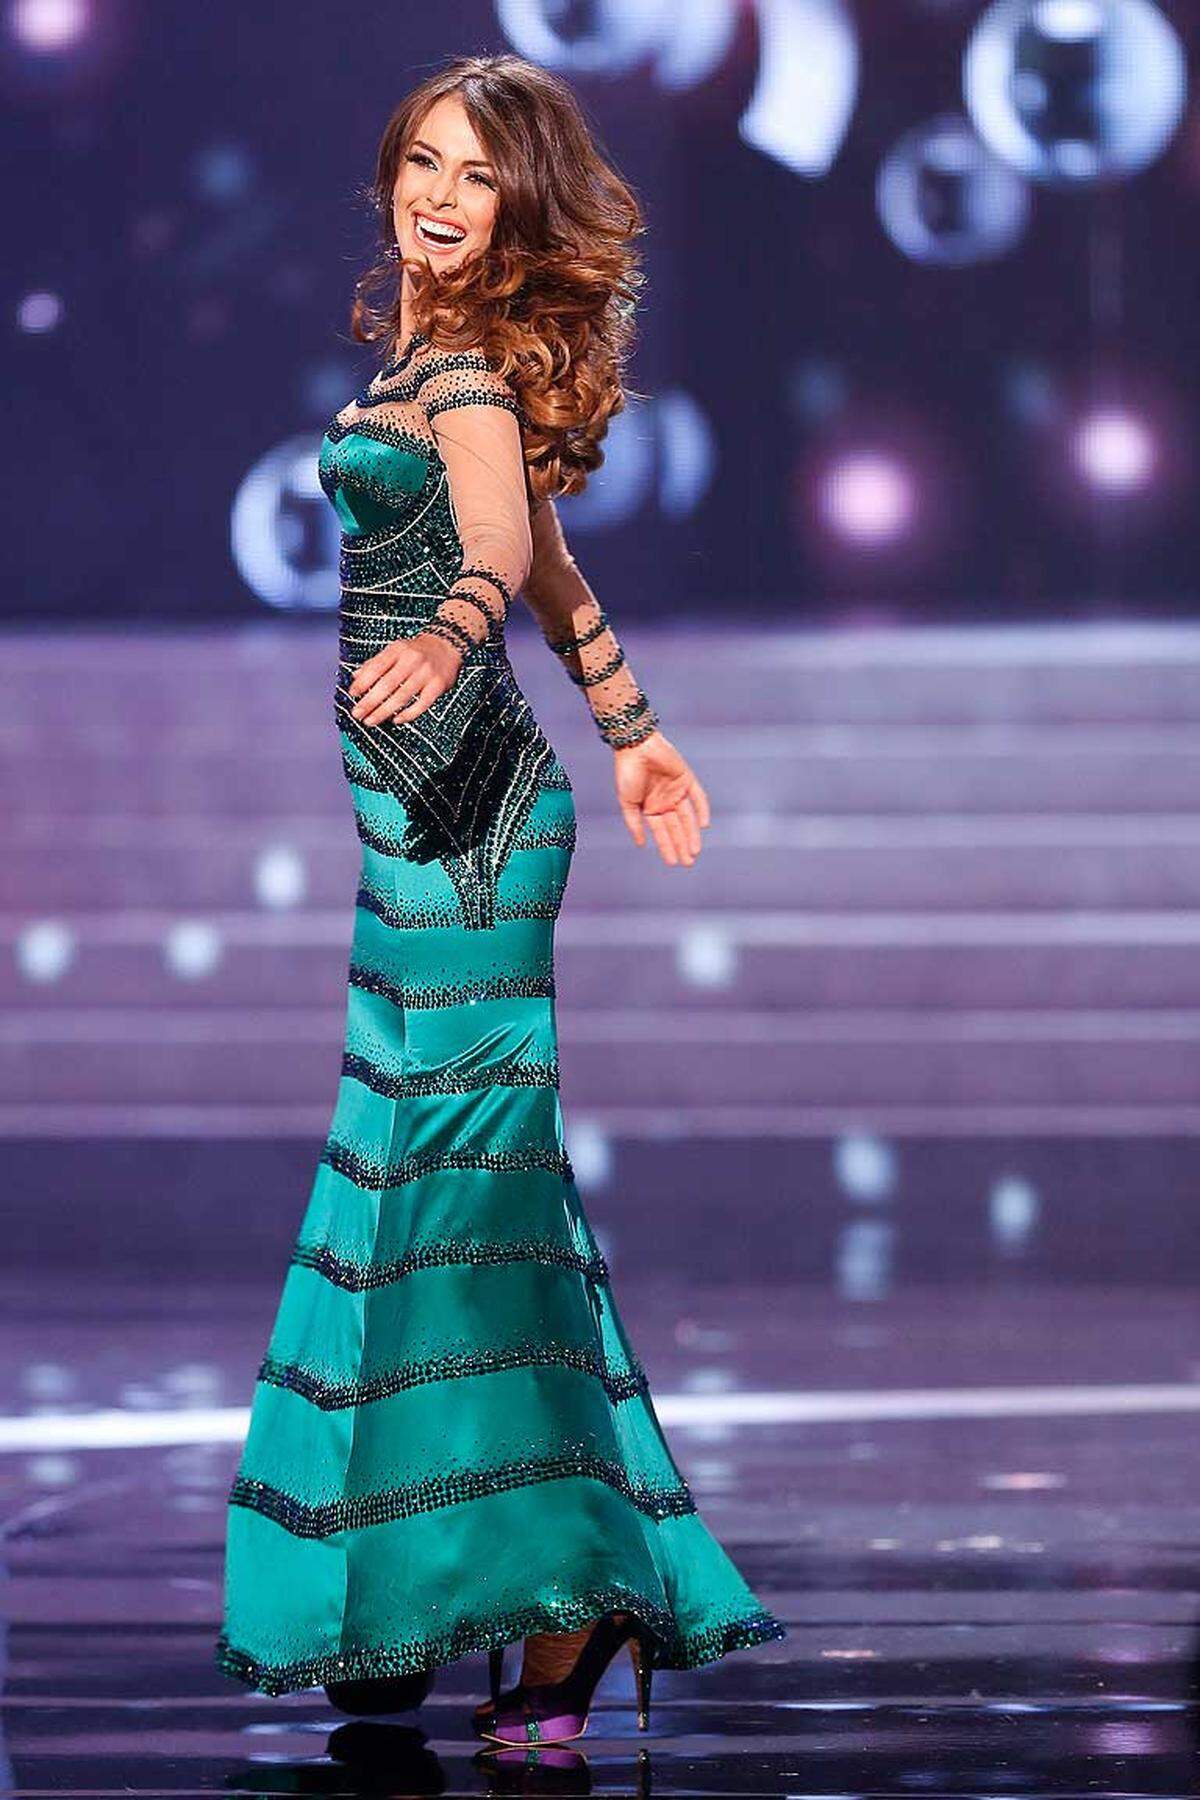 Irene Sofia Esser Quintero aus Venezuela erreichte den dritten Platz. Nebenbei: Eine Miss Austria/Universe hat es in der jüngeren Geschichte des Wettbewerbs noch nicht gegeben.